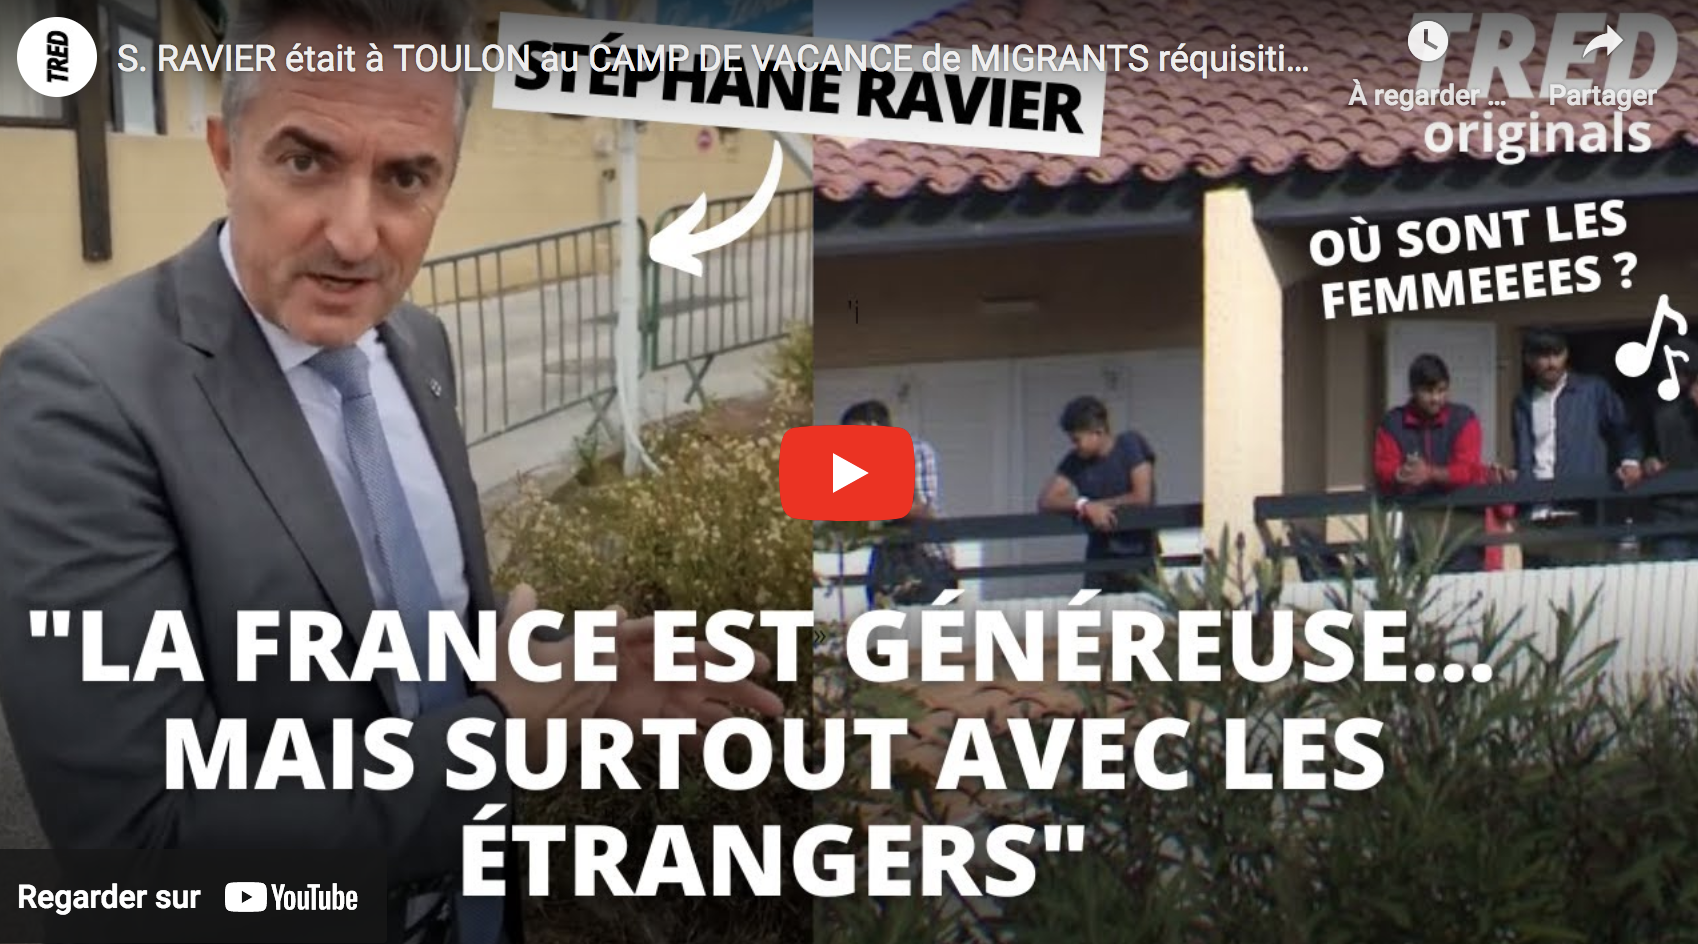 Stéphane Ravier était à Toulon au camp de vacances de migrants réquisitionné par l’État (VIDÉO)